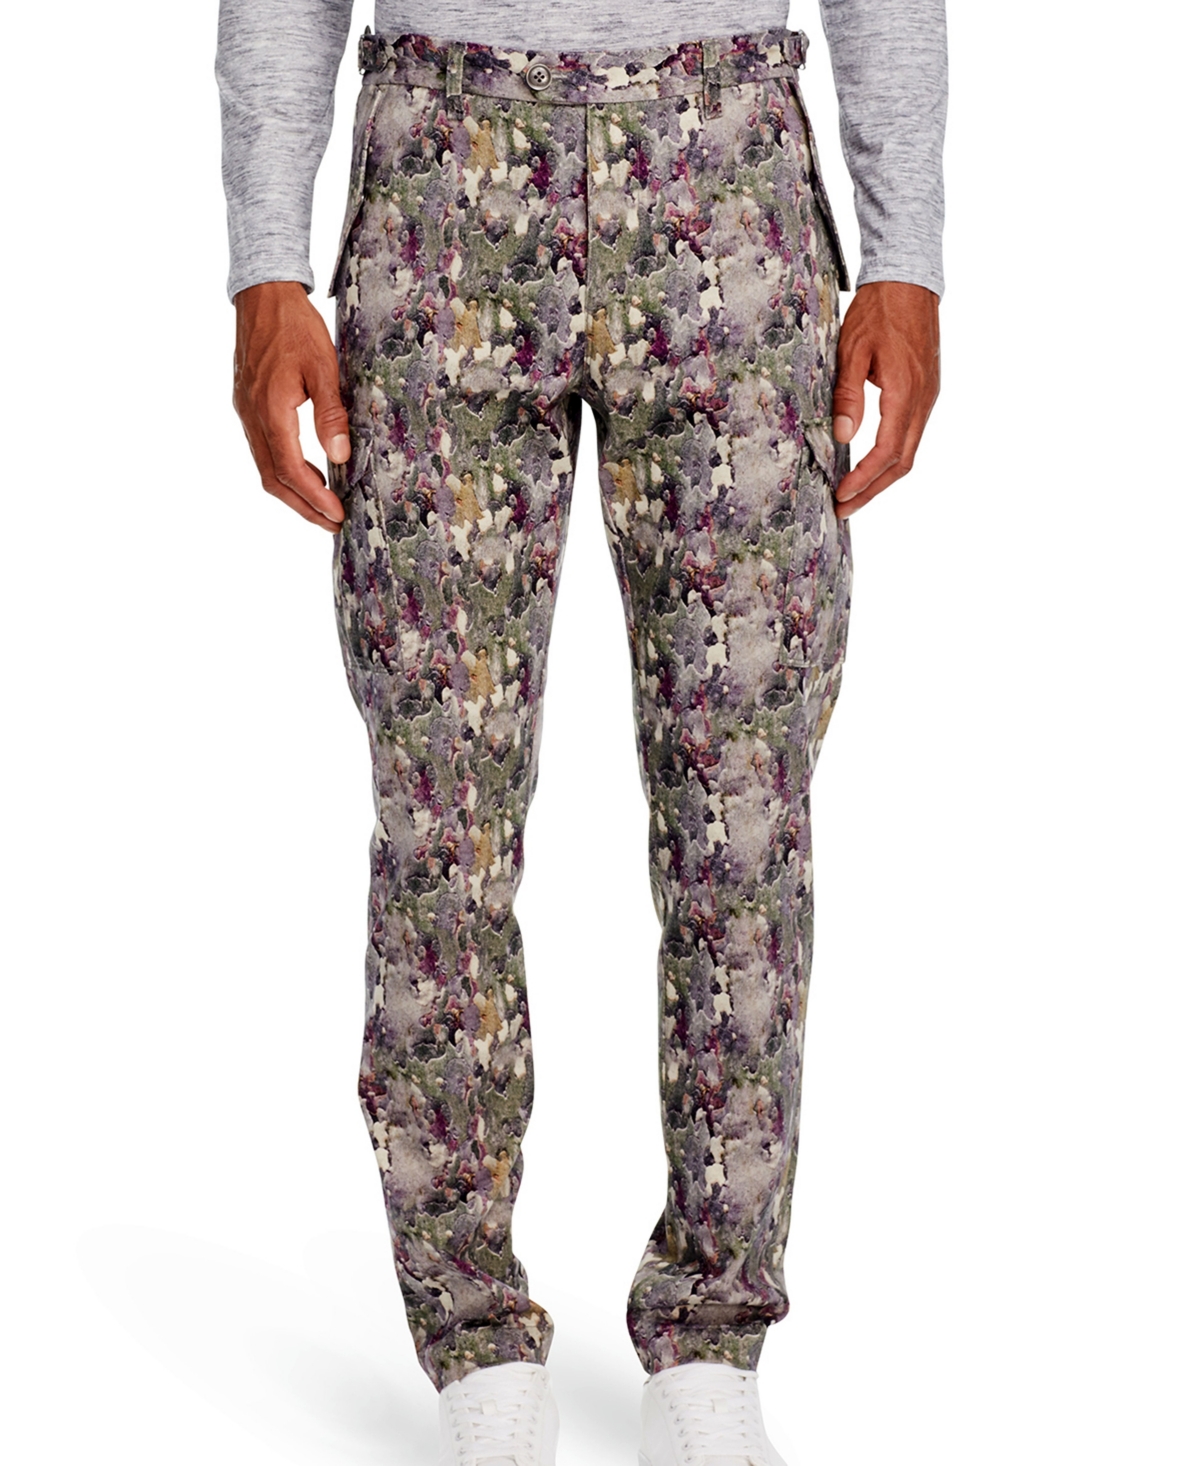 Men's Standard-Fit Camo Pants - Multi